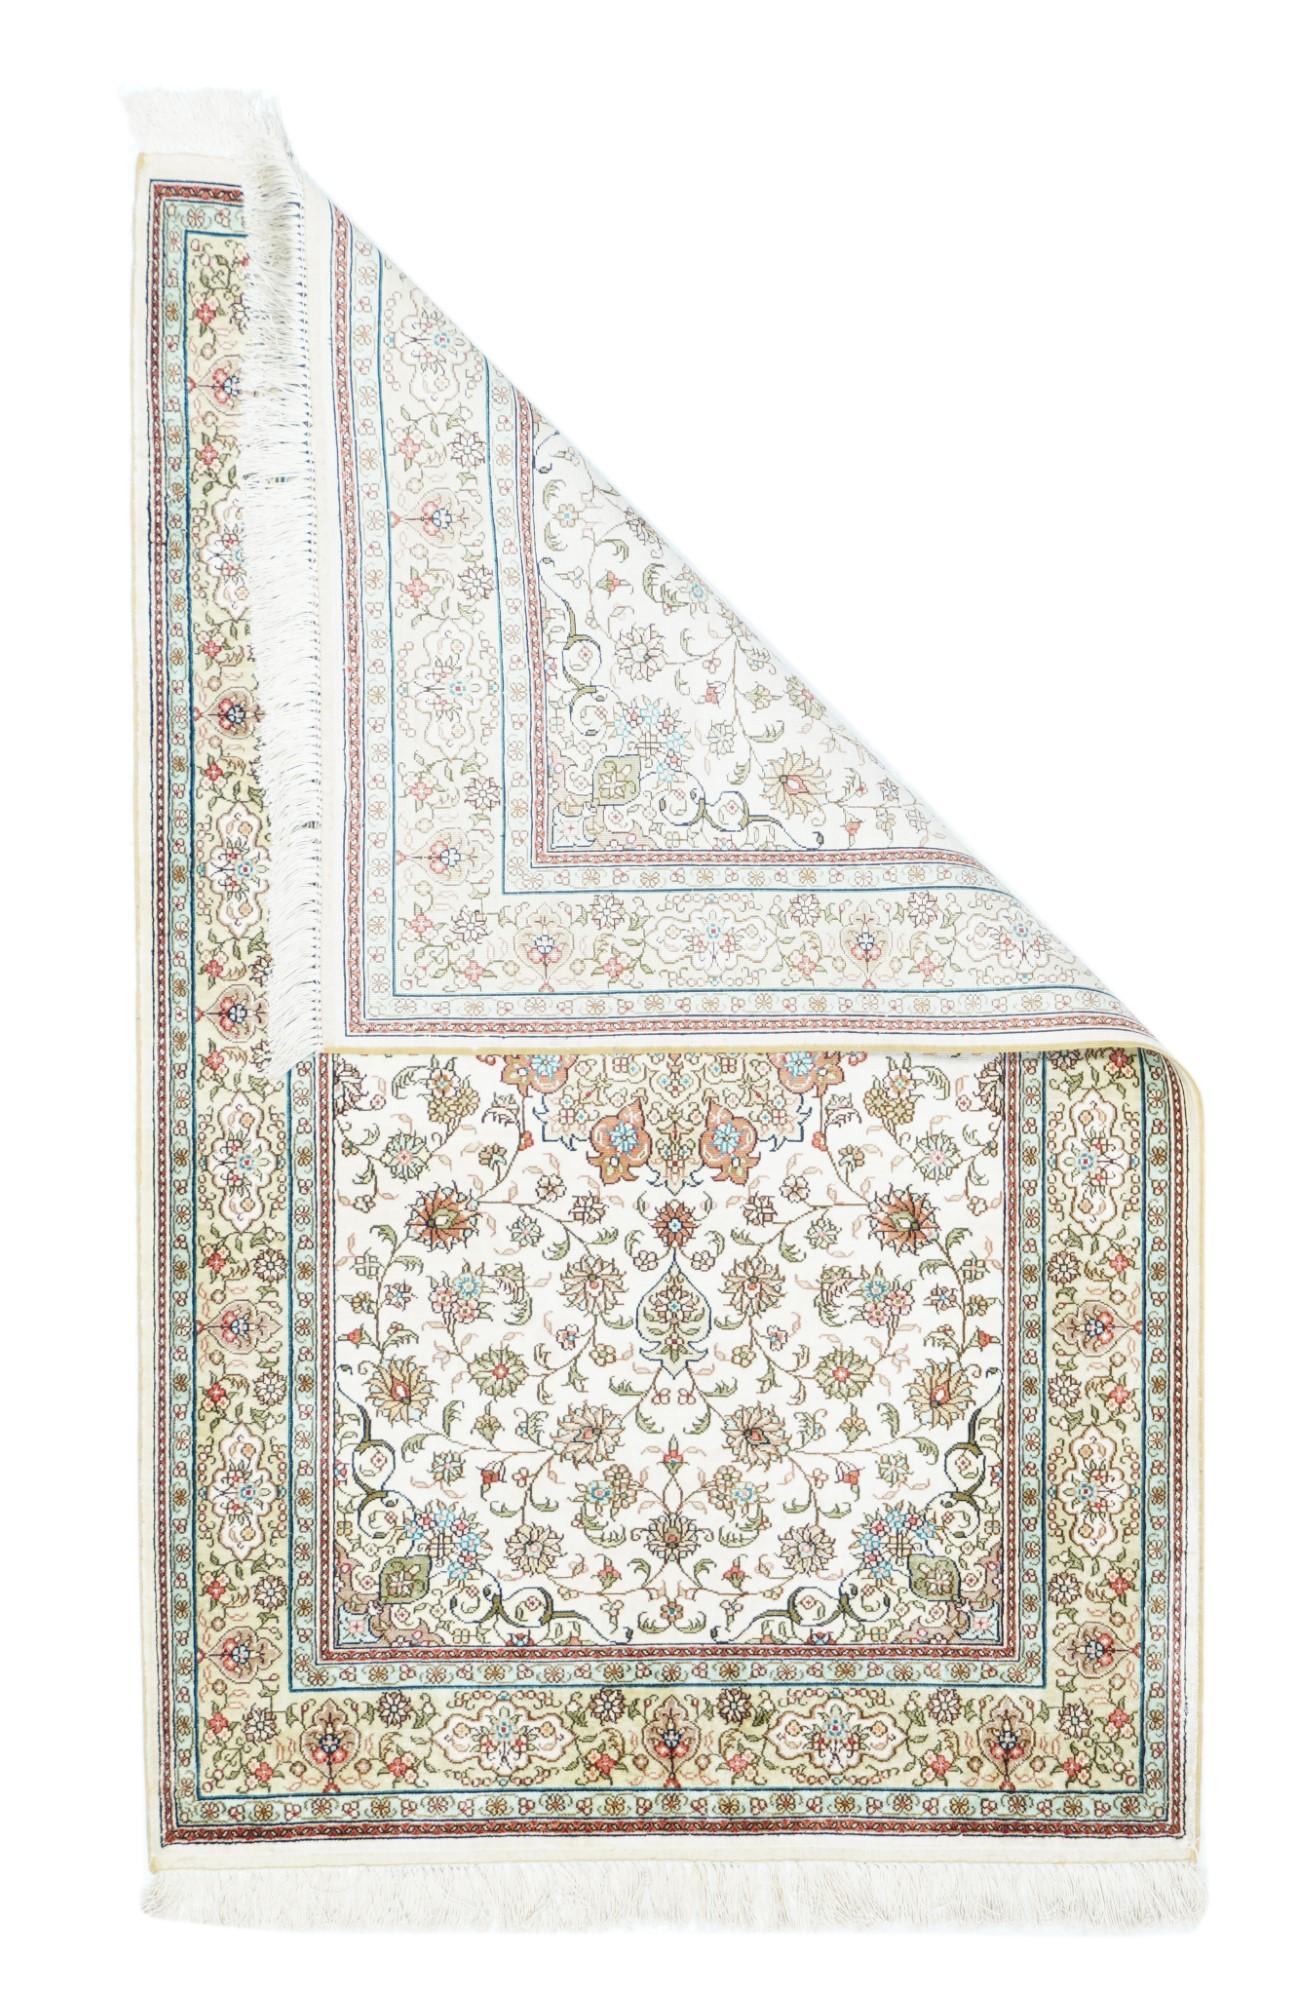 Tapis en soie à motif persan 2'8'' x 4'2''. Dans le style persan d'Ispahan, avec huit plus huit médaillons ronds en paille et en rouille de rose, à l'intérieur d'une vinerie arabesque rehaussée de palmettes et de rosettes simples et triples. Bordure